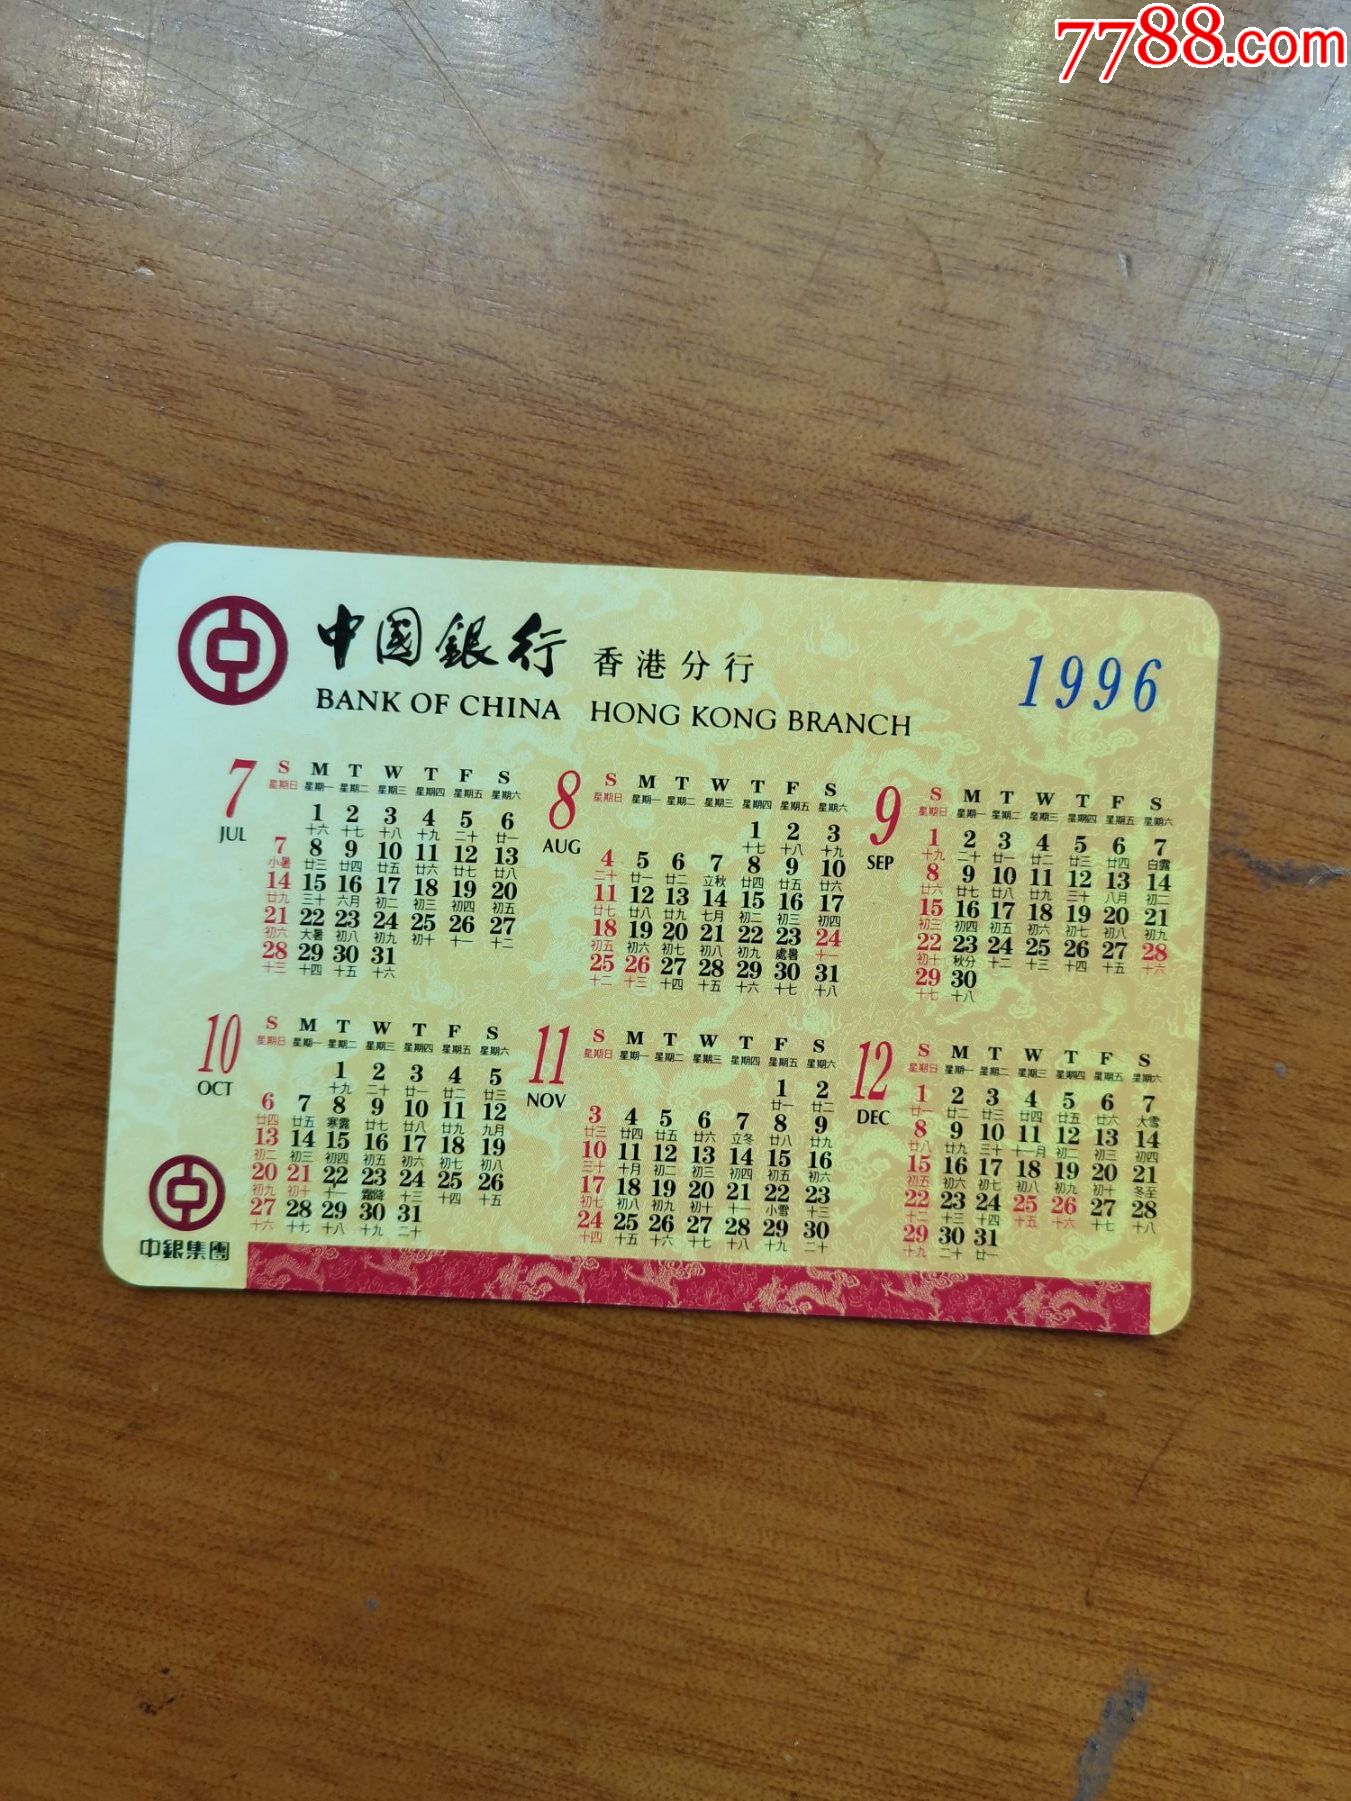 96年中国银行香港分行年历